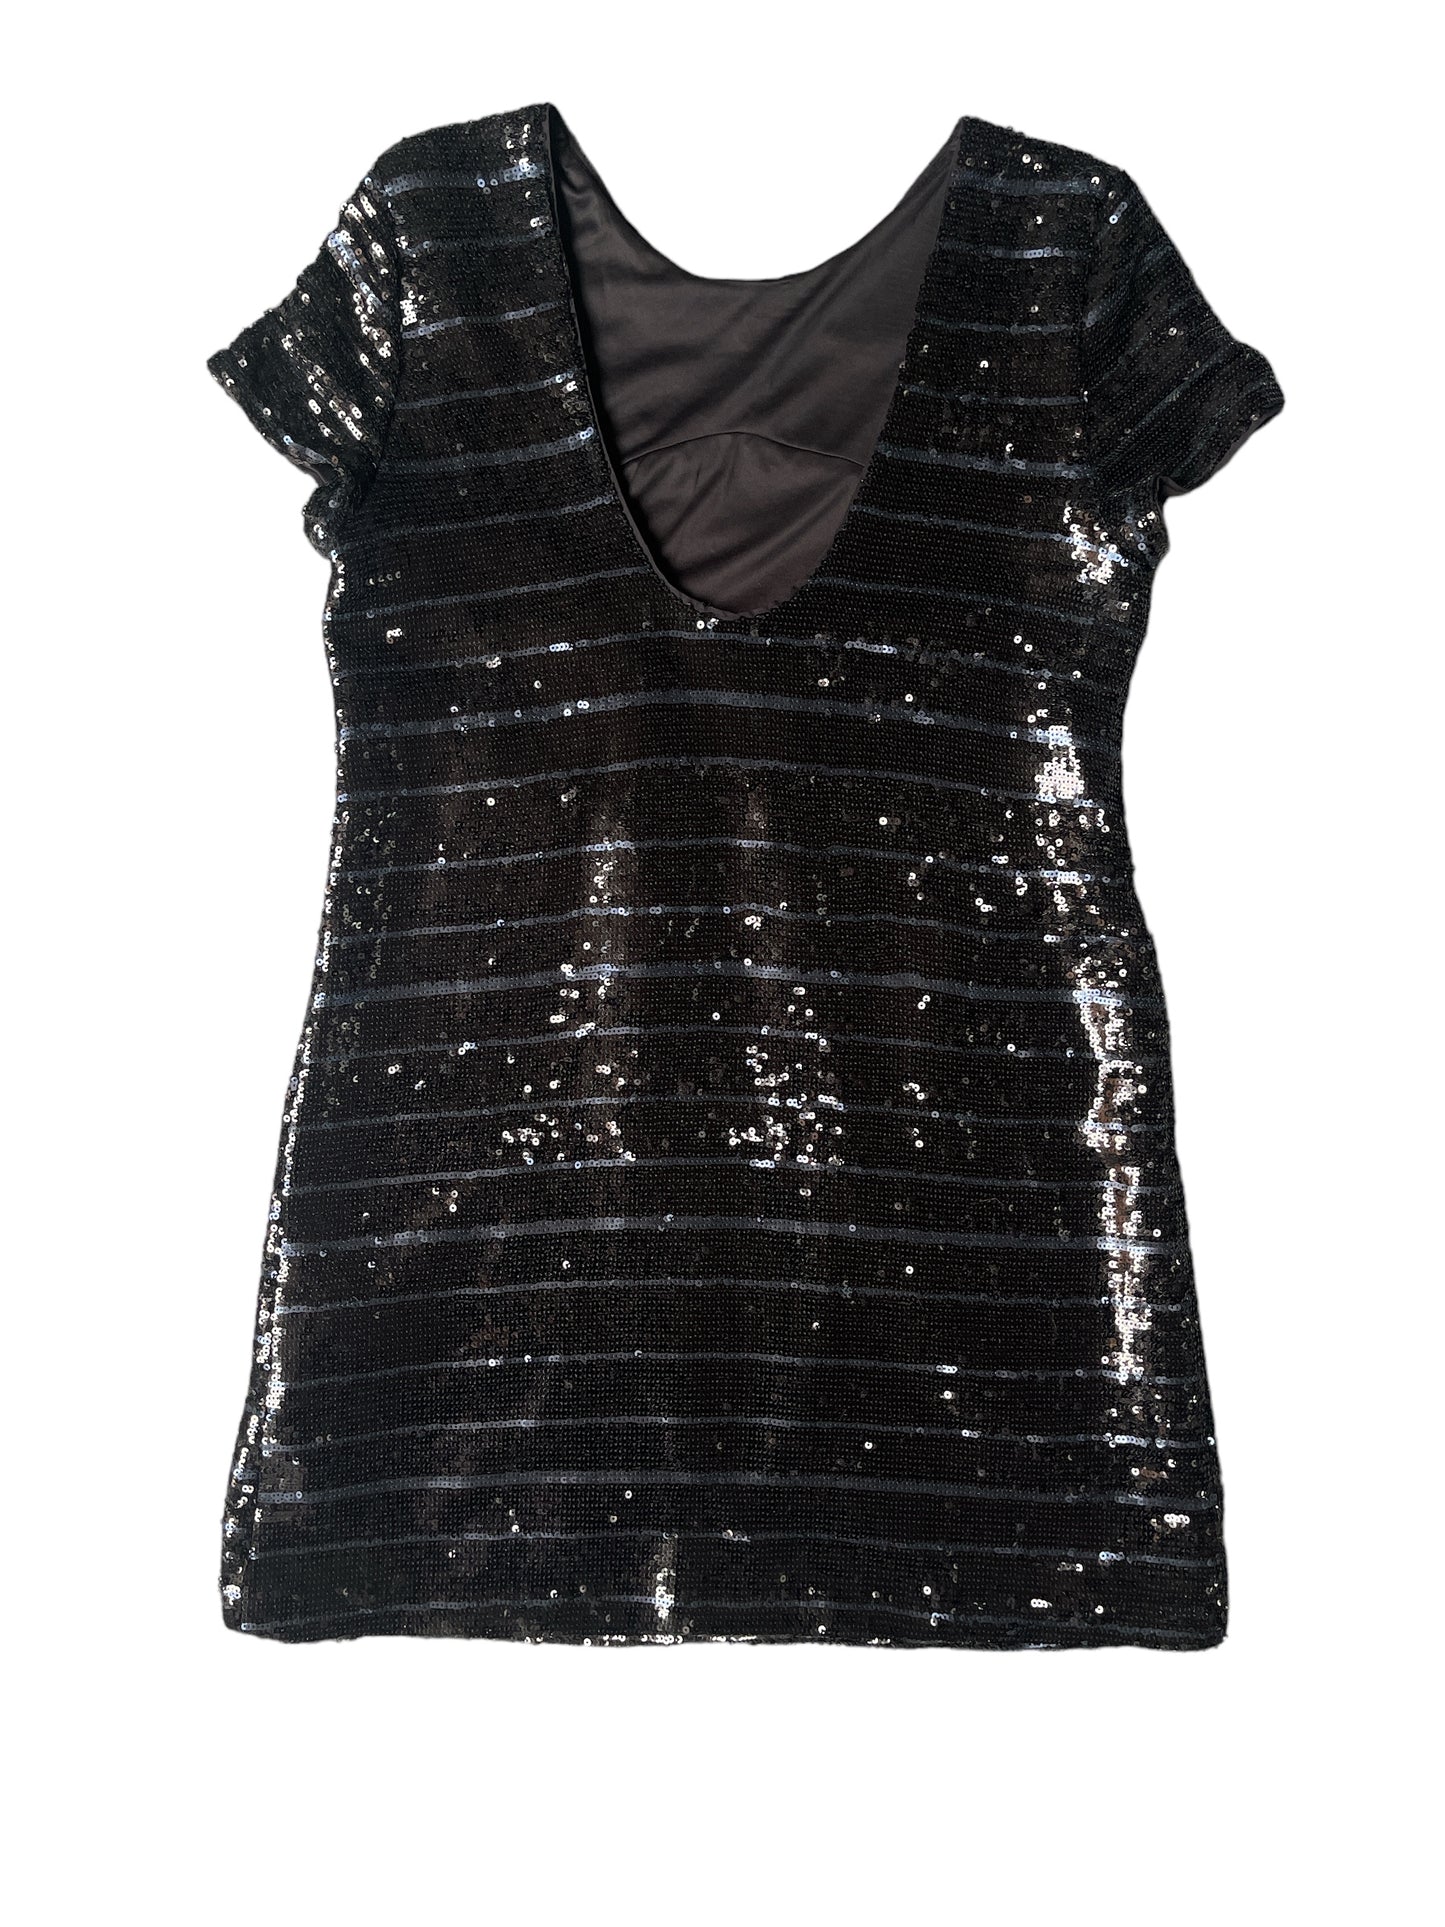 Black Sequin Formal Dress Size L